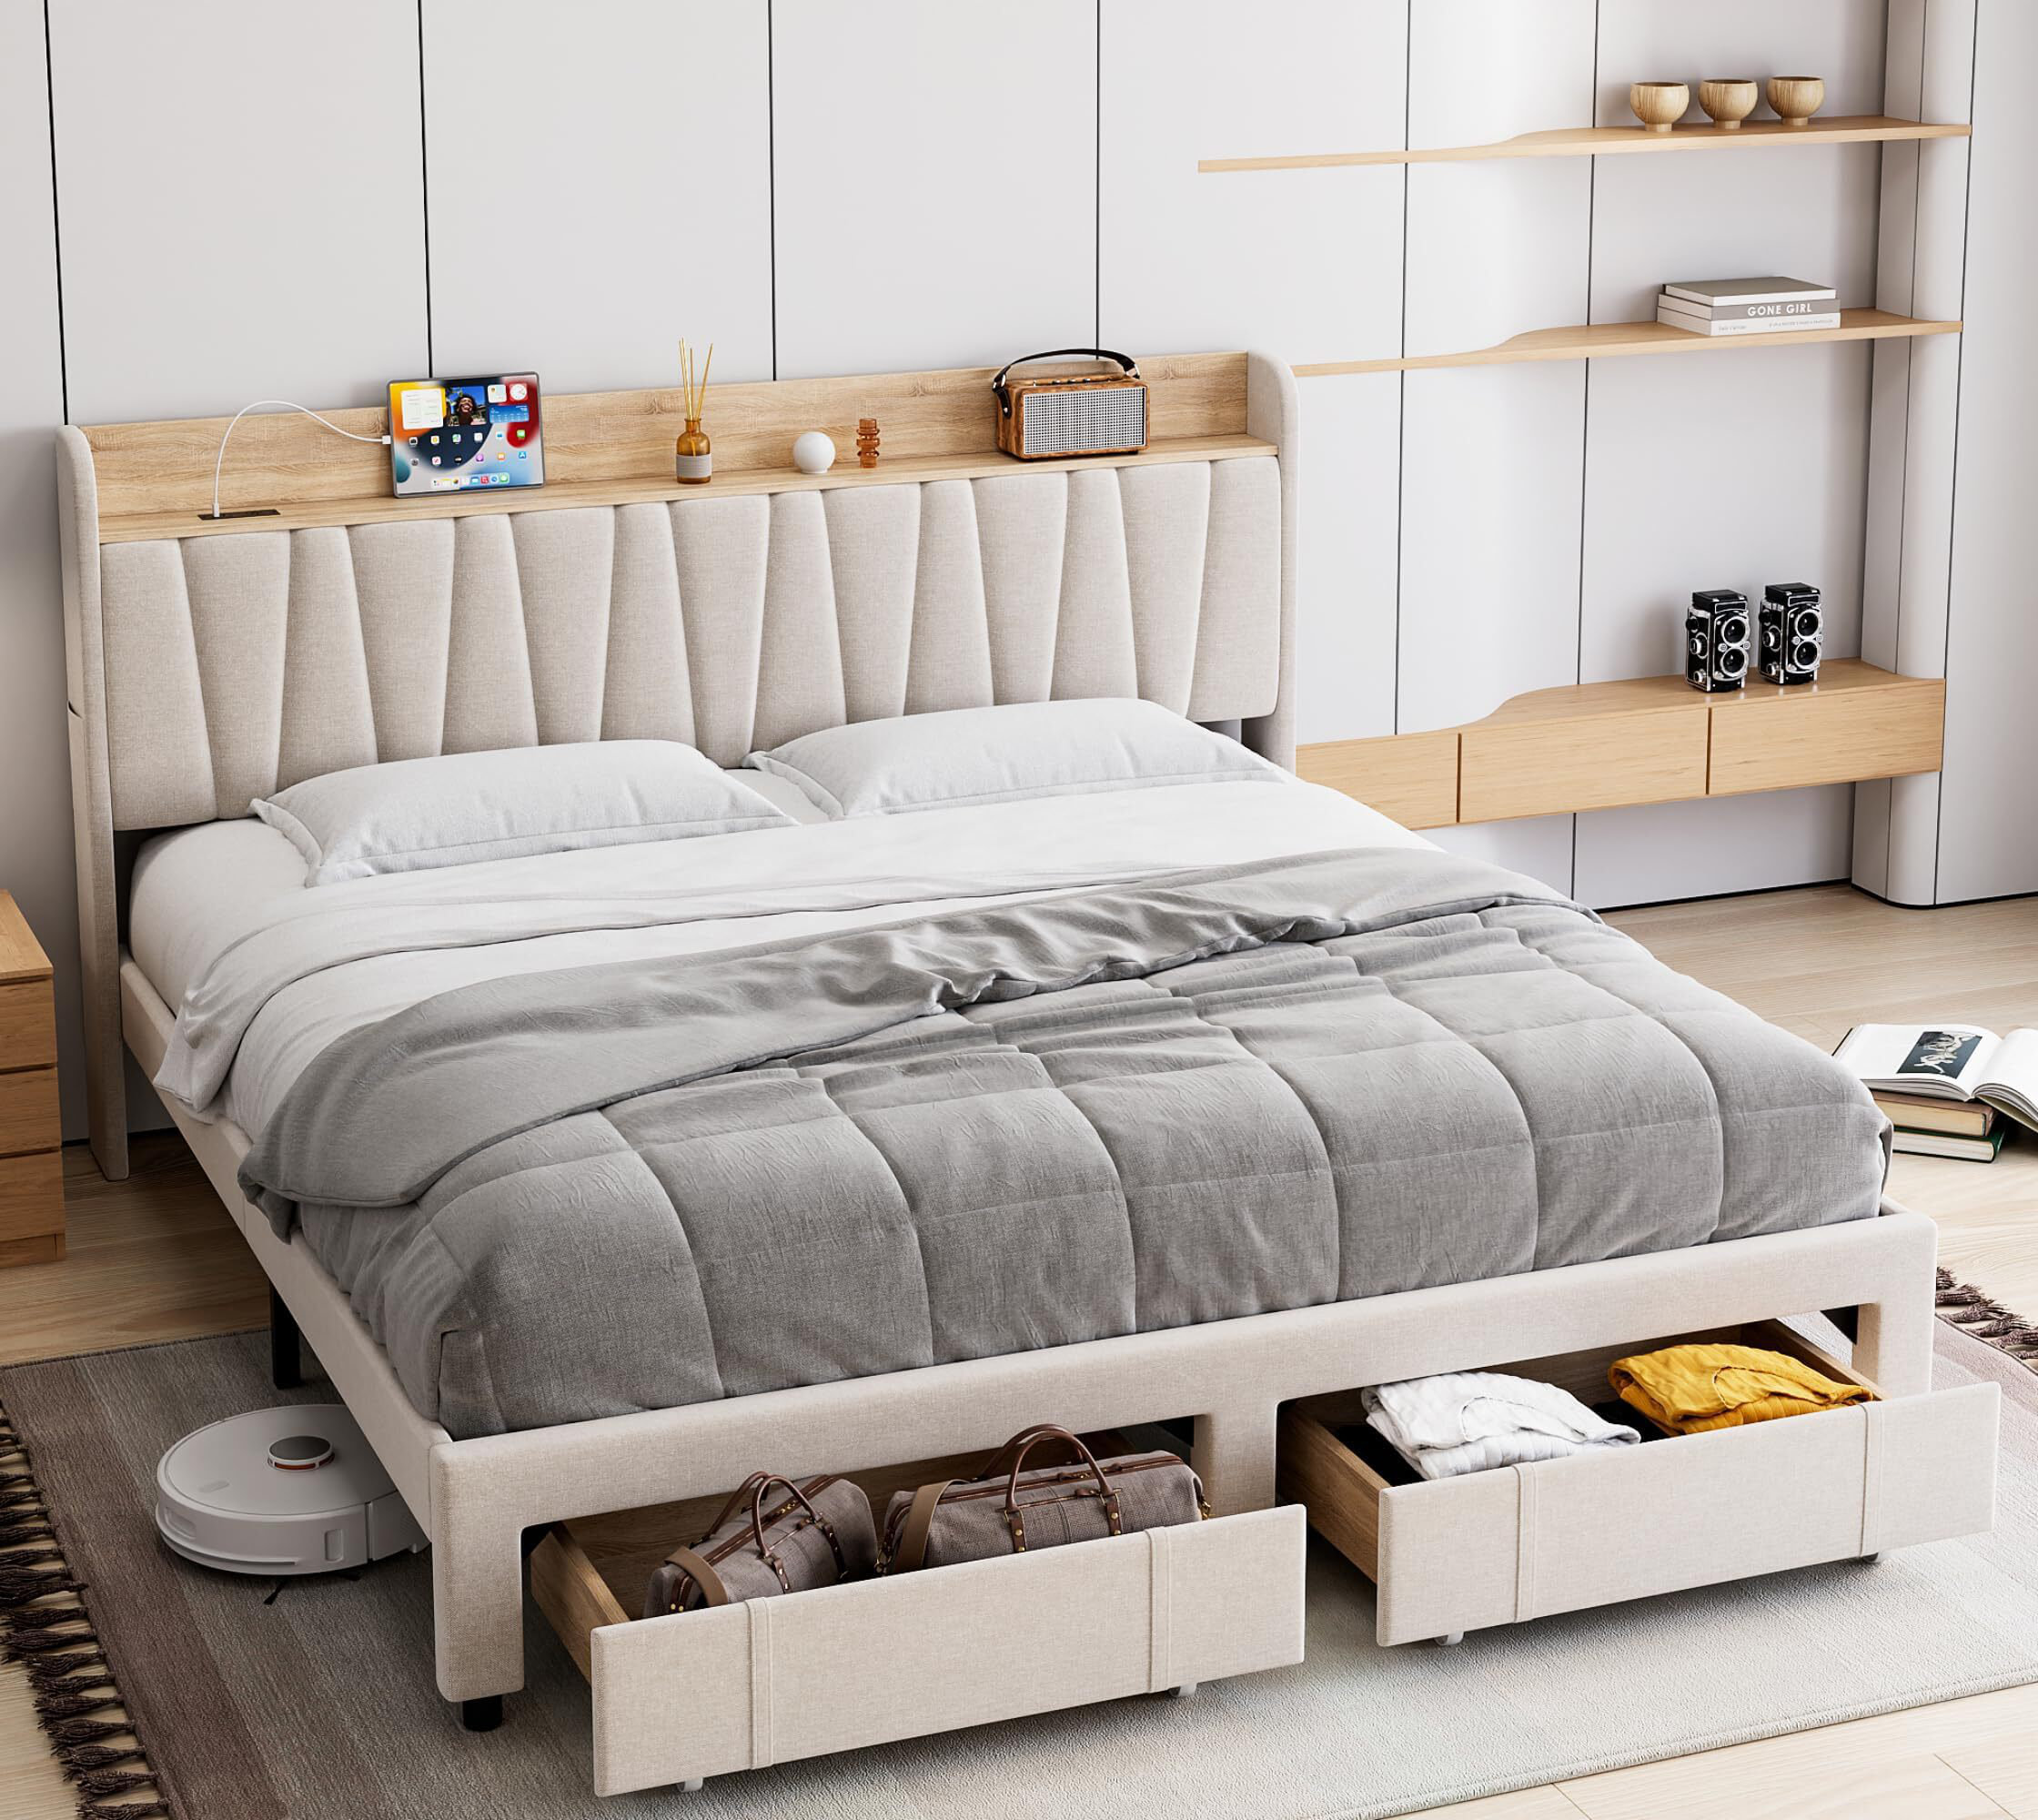 Flannelette Bed Backrest Bedside Upholstered Bed Cushion Pillow